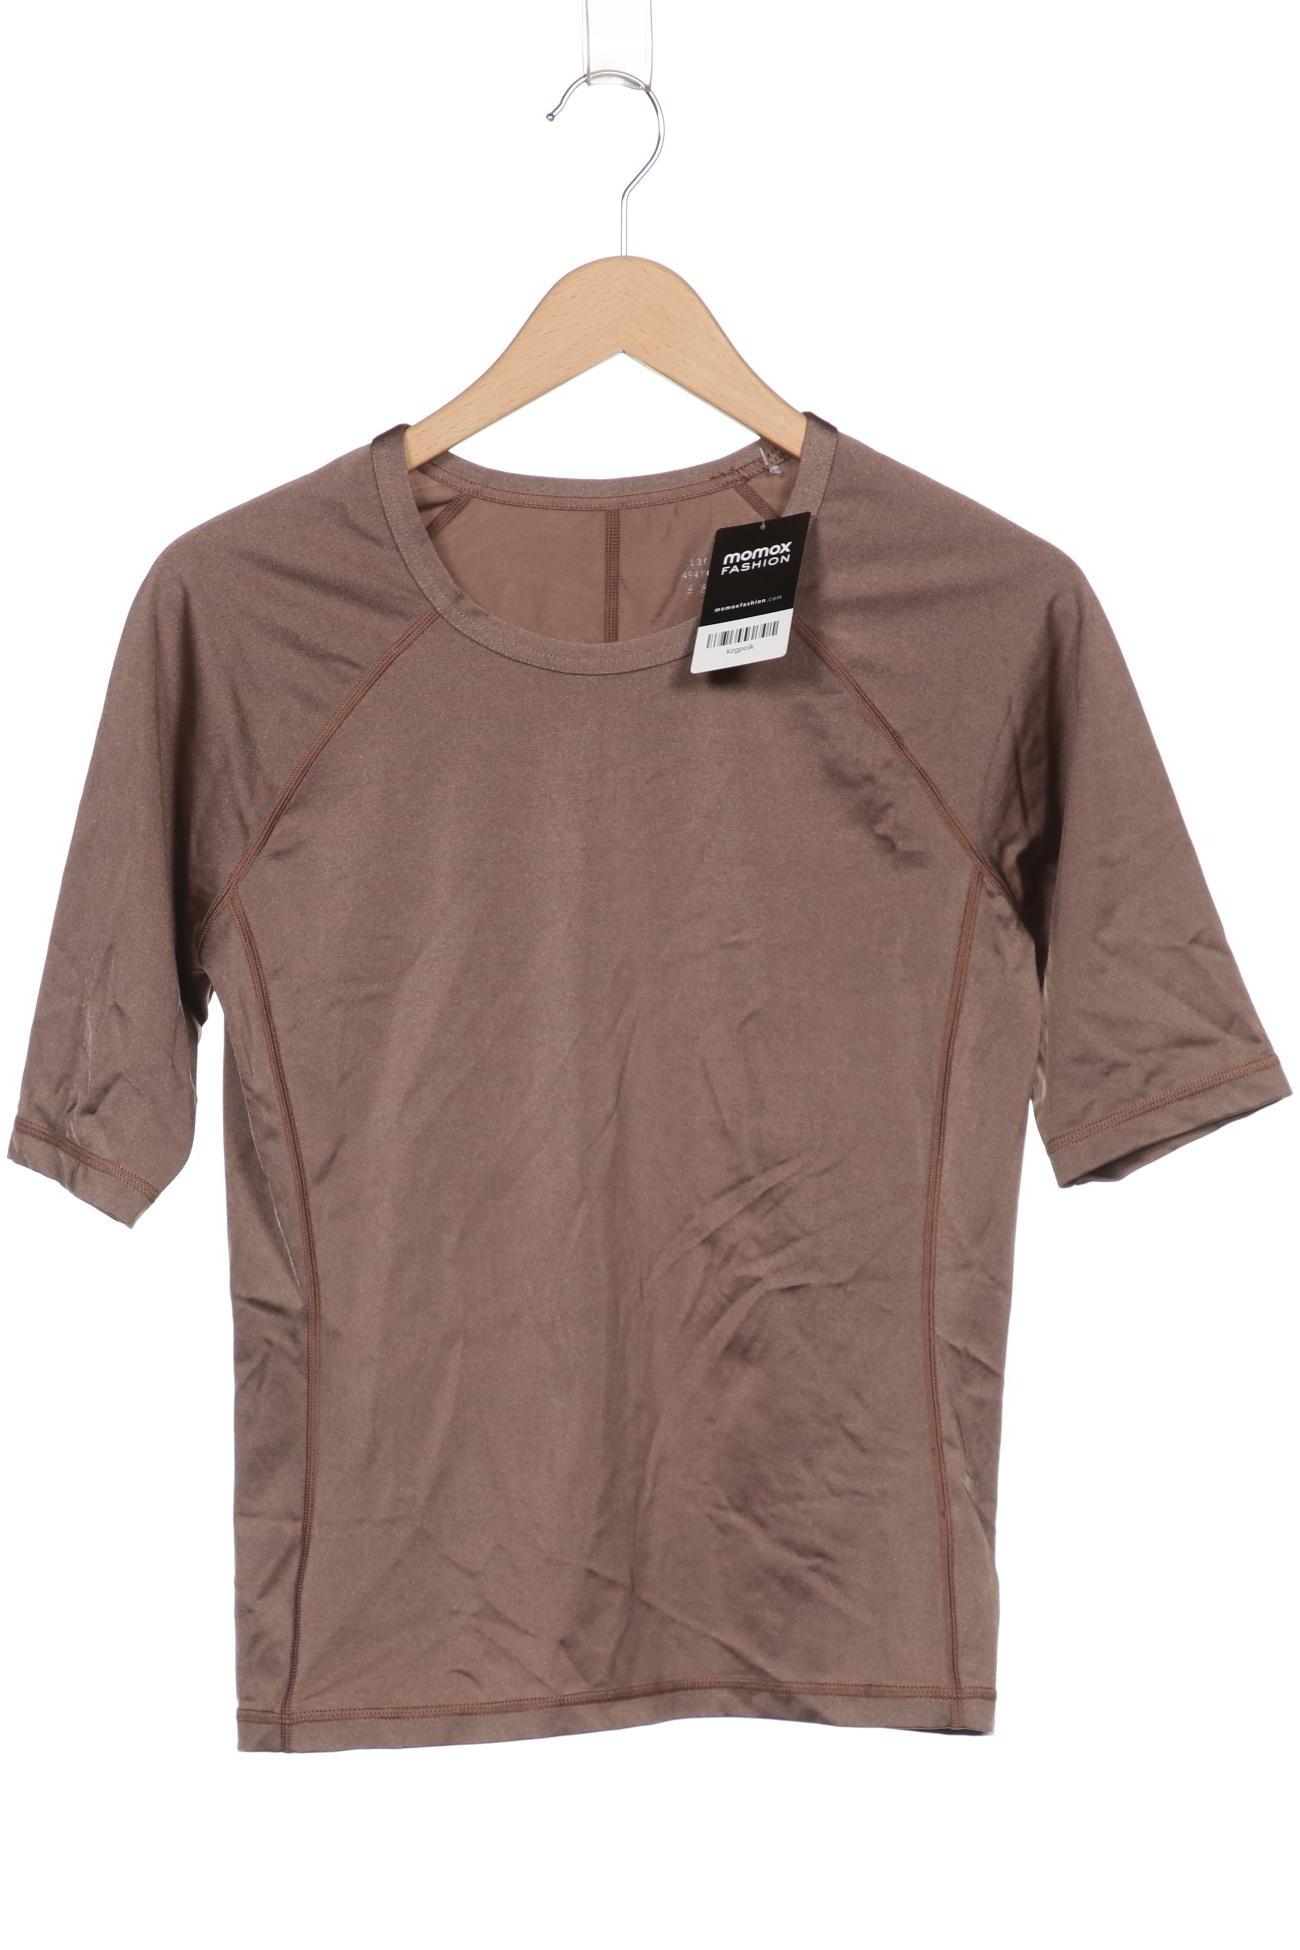 Arket Damen T-Shirt, braun, Gr. 42 von Arket